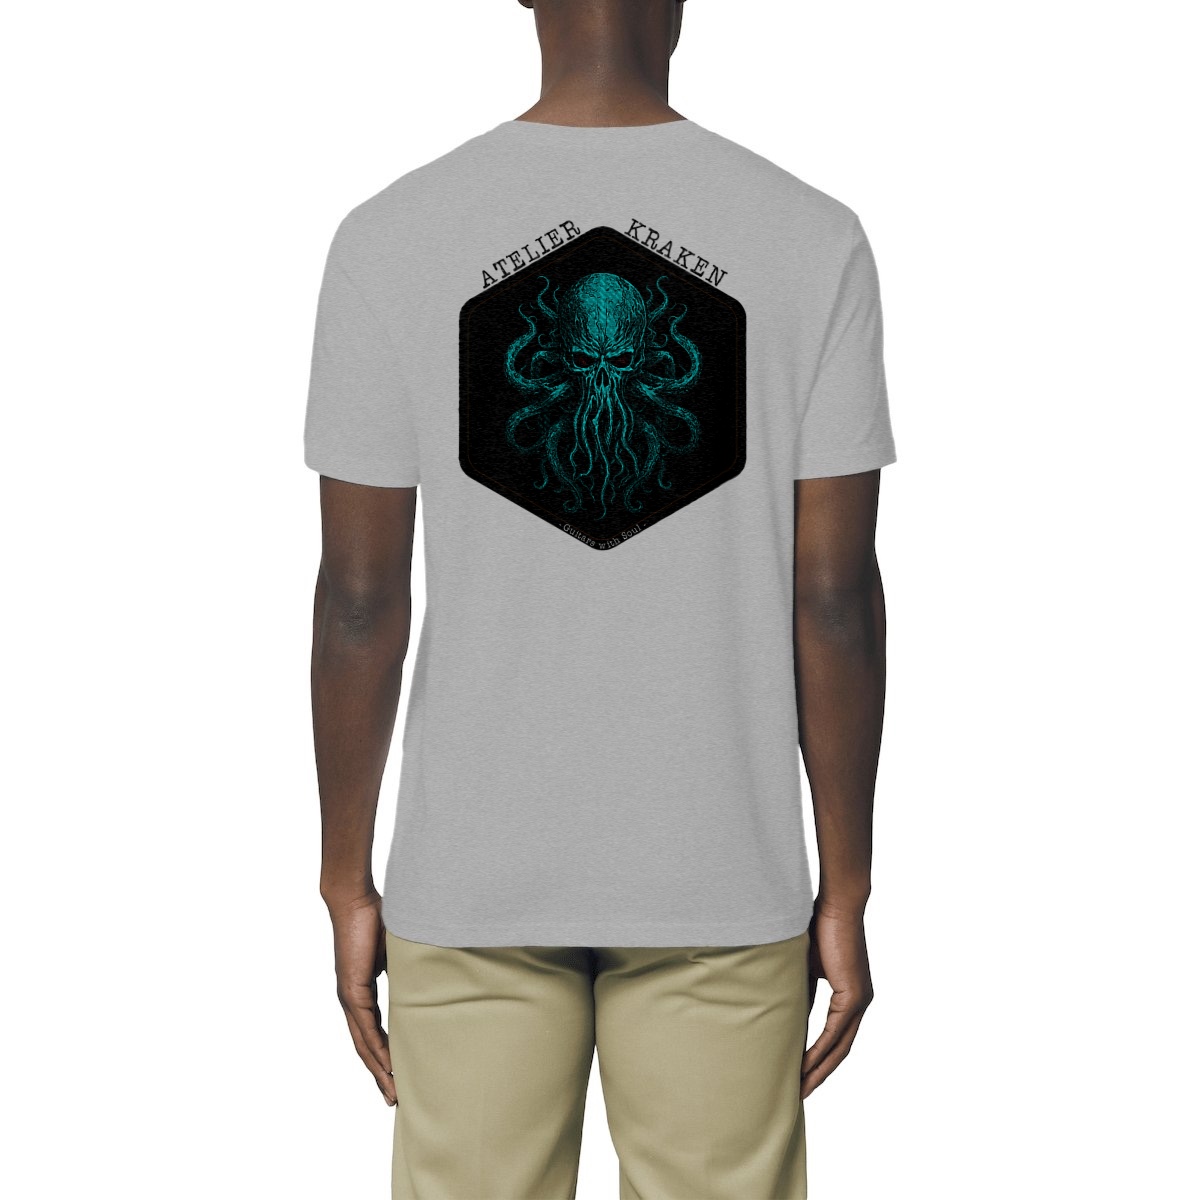 T-shirt KRAKEN - Atelier Kraken Unisexe